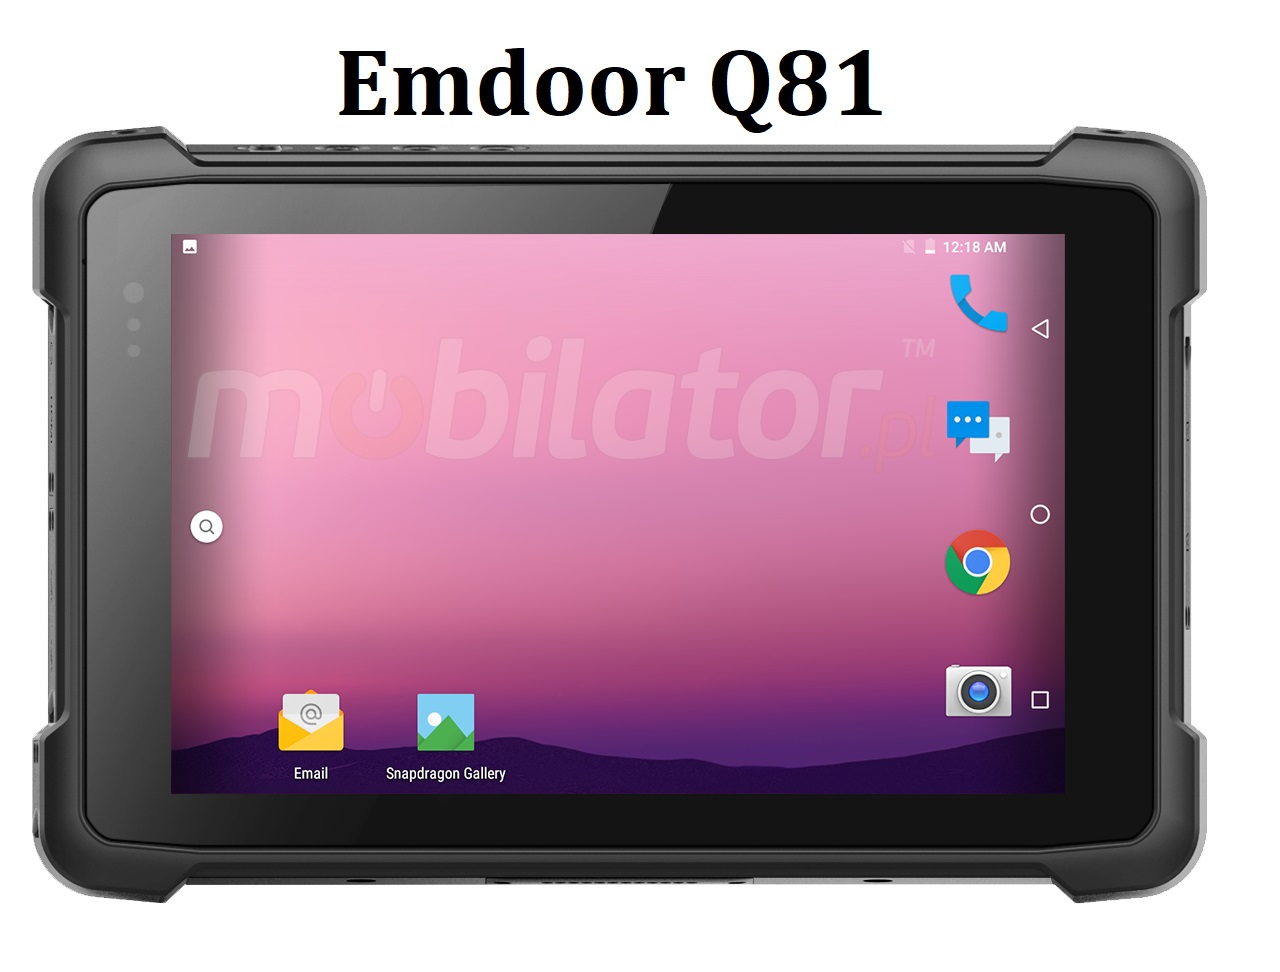 Wytrzymay 8-calowy tablet (IP65 + MIL-STD-810G) z NFC, pamici 4GB RAM, dyskiem 64GB ROM, Bluetooth 4.1, NFC i skanerem kodw 1D MOTO SE655 - Emdoor Q81 v.2